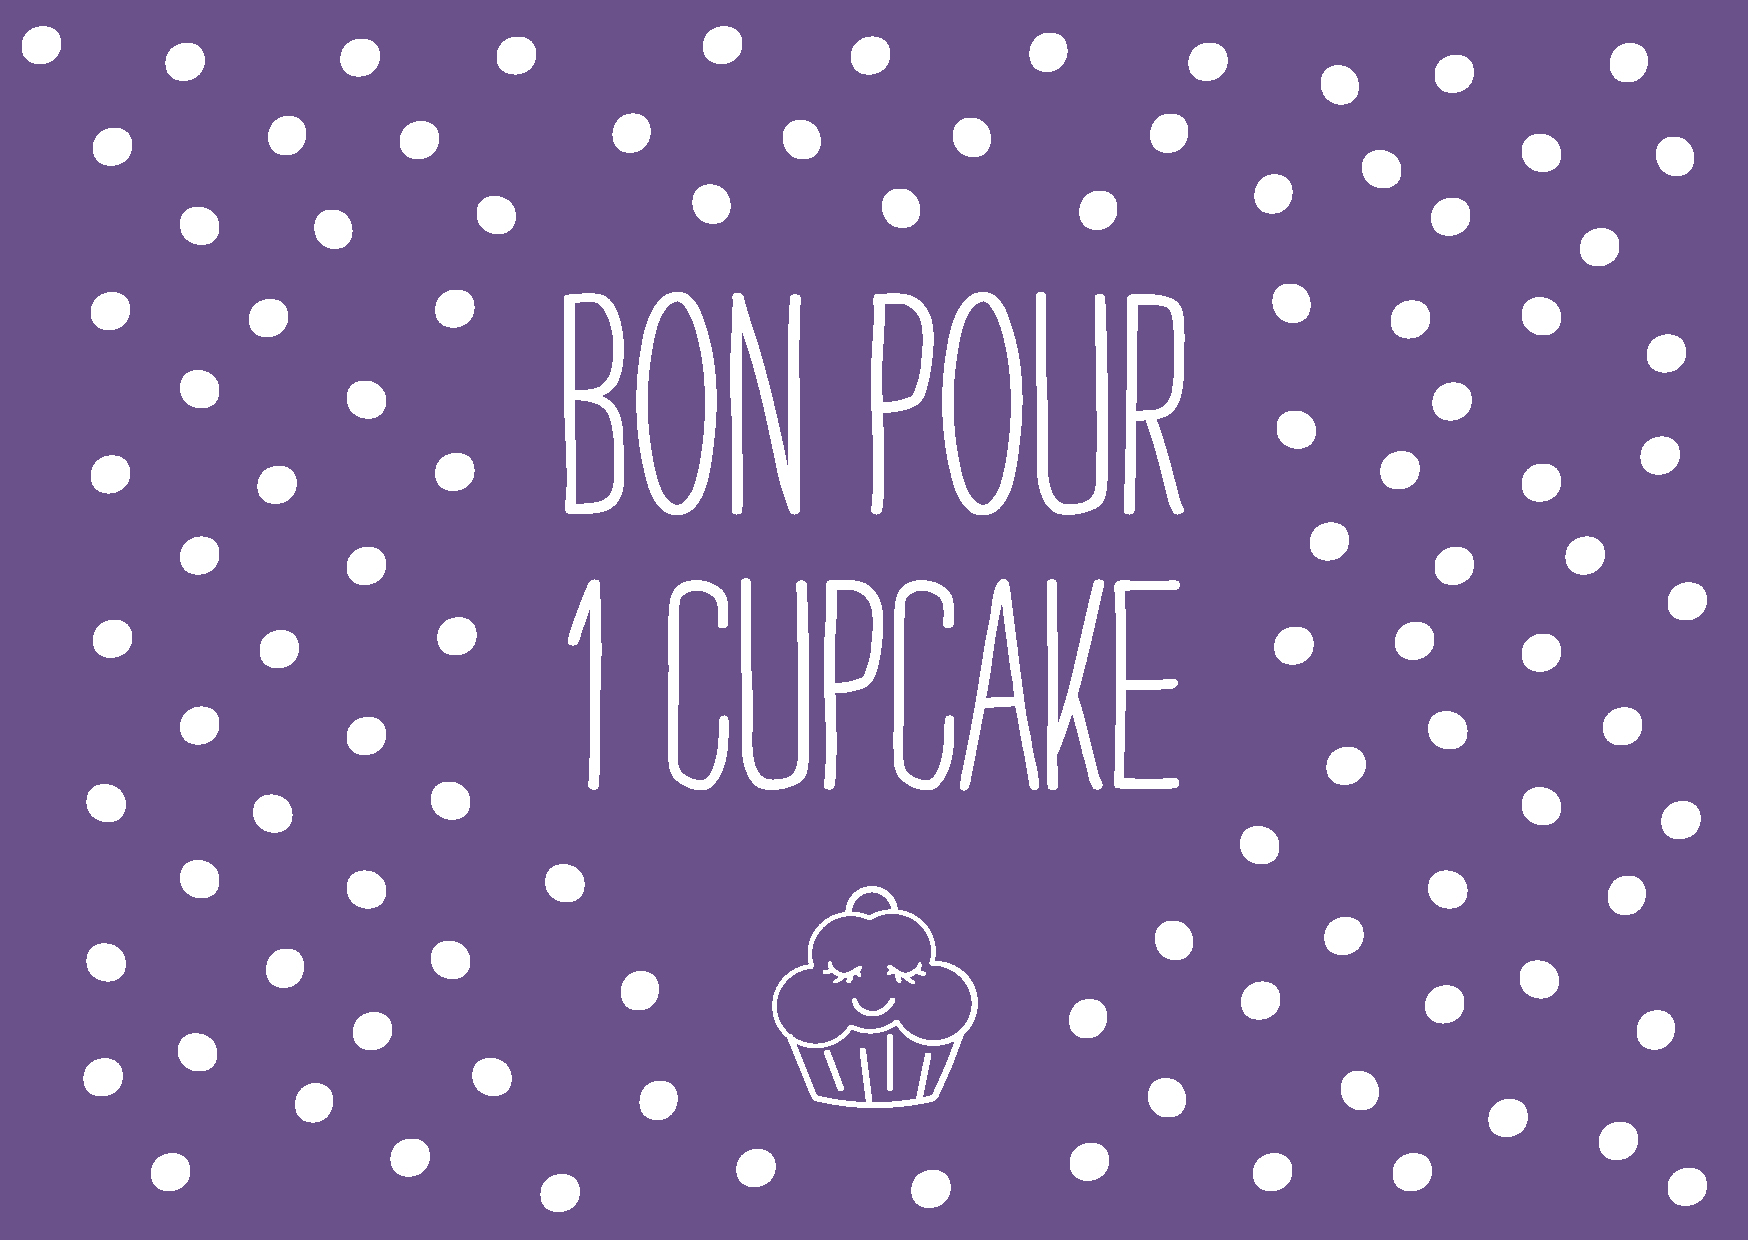 Bon pour 1 cupcake